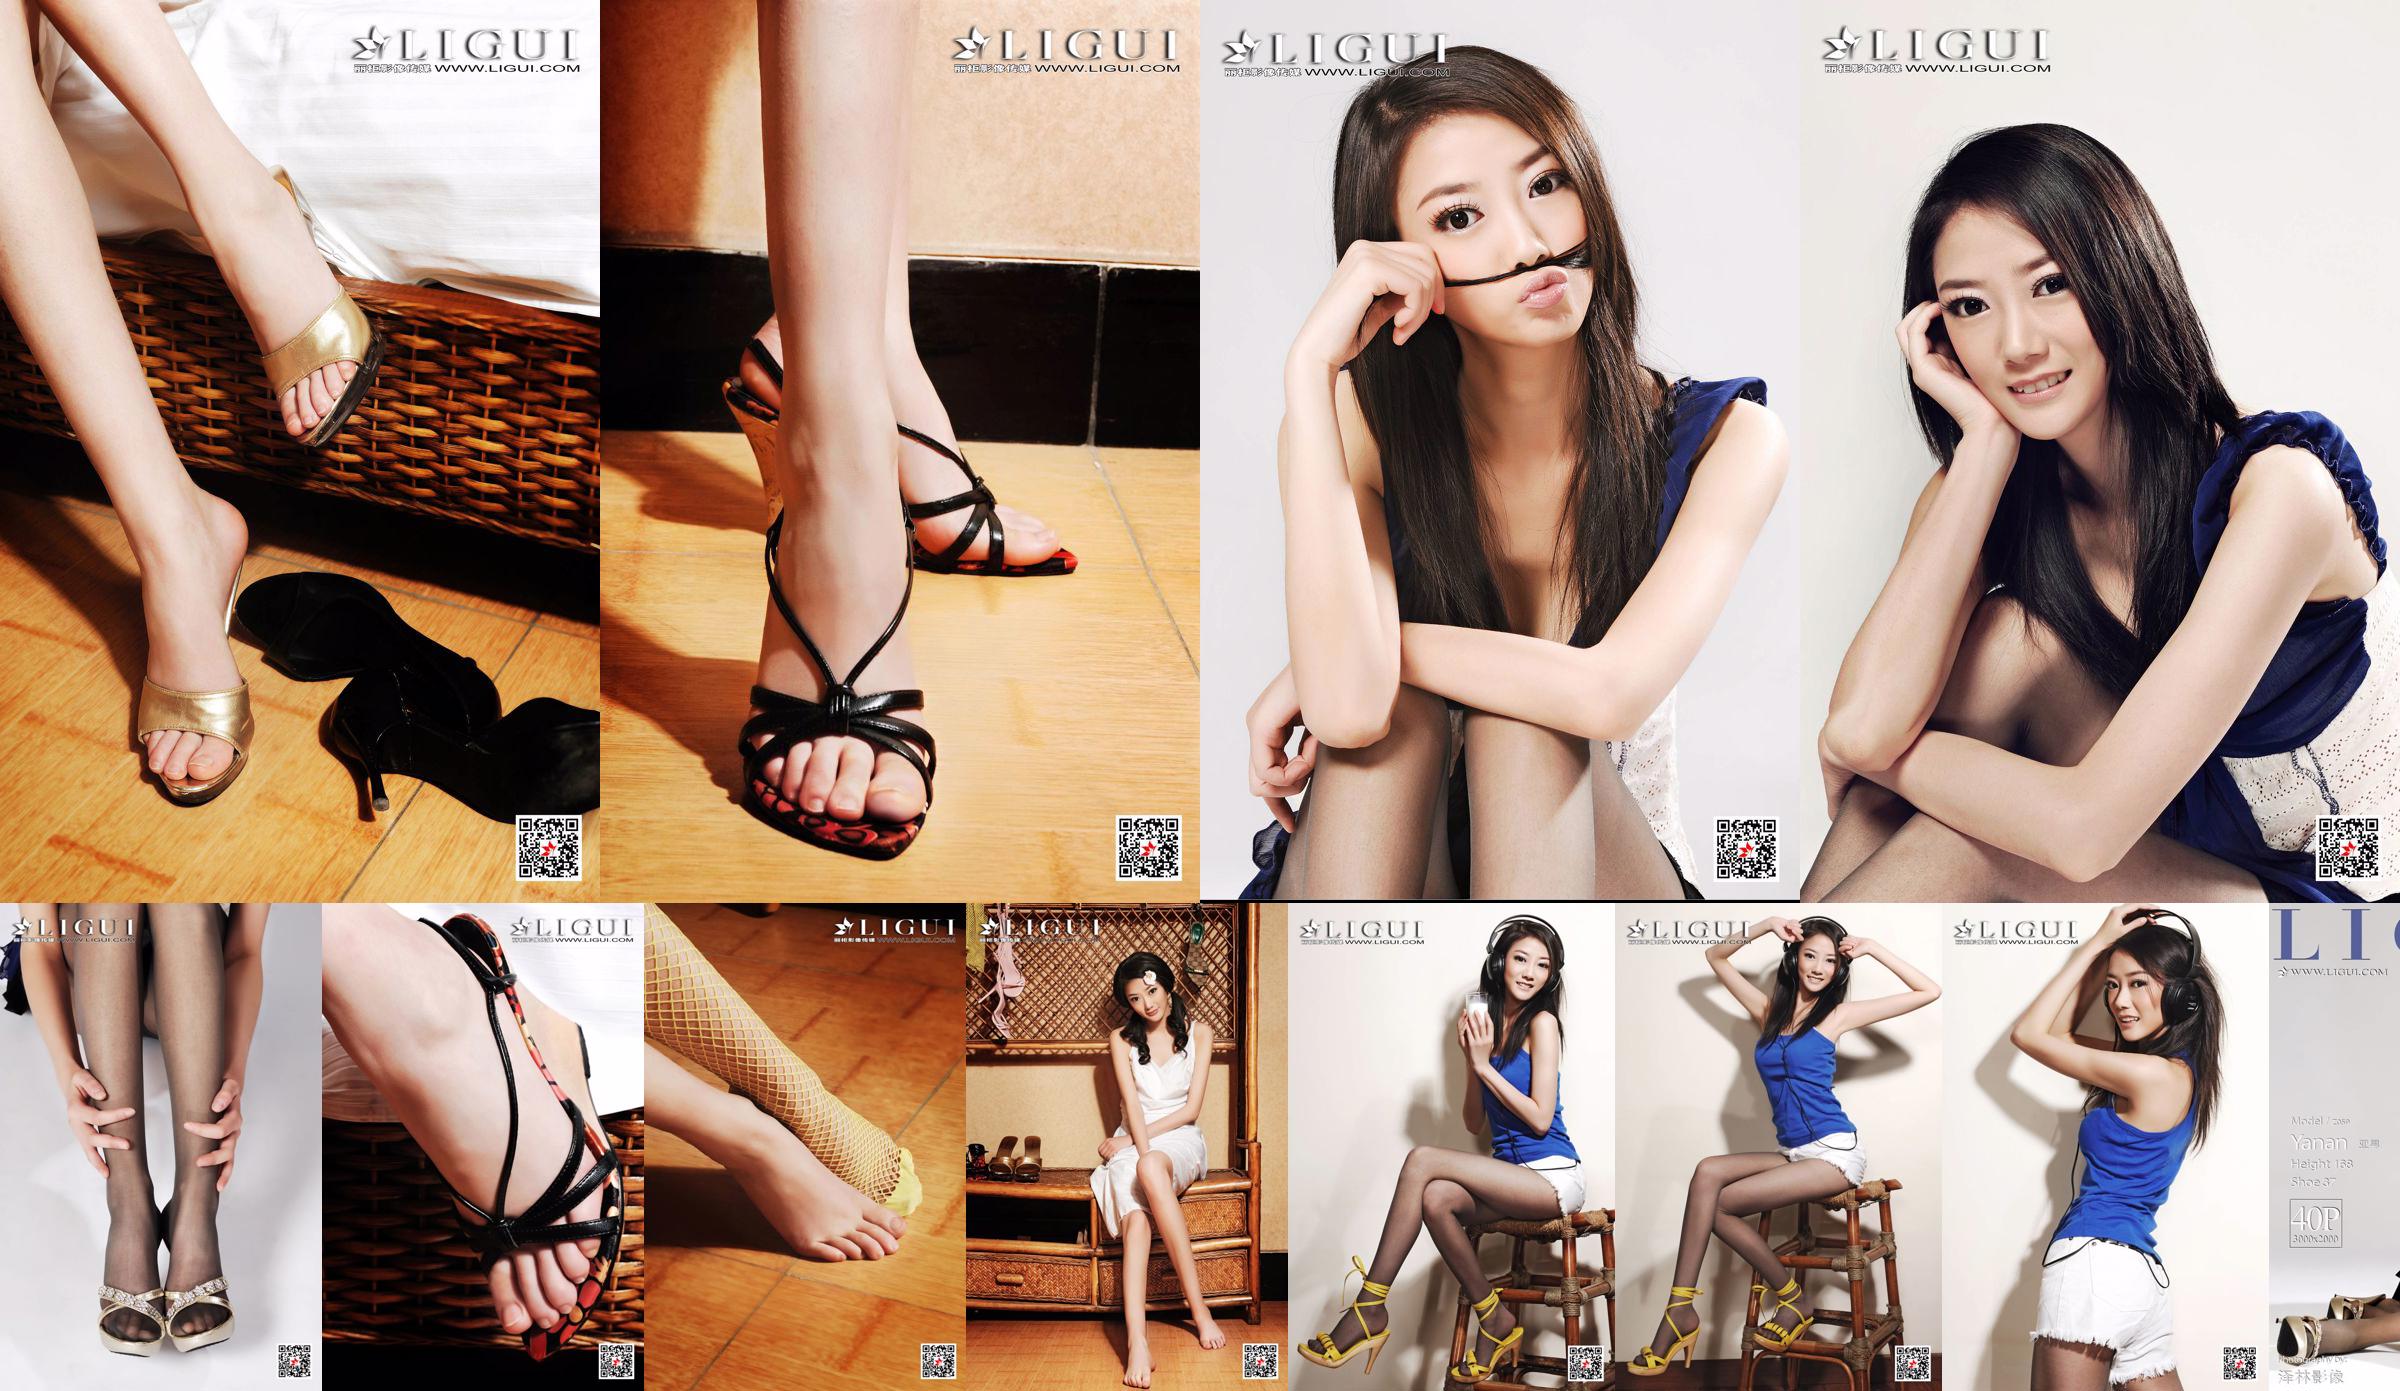 Азиатский мальчик-модель "Девушка с длинными ногами и темпераментом" [Лигуй Лигуй] No.fad92e Страница 1